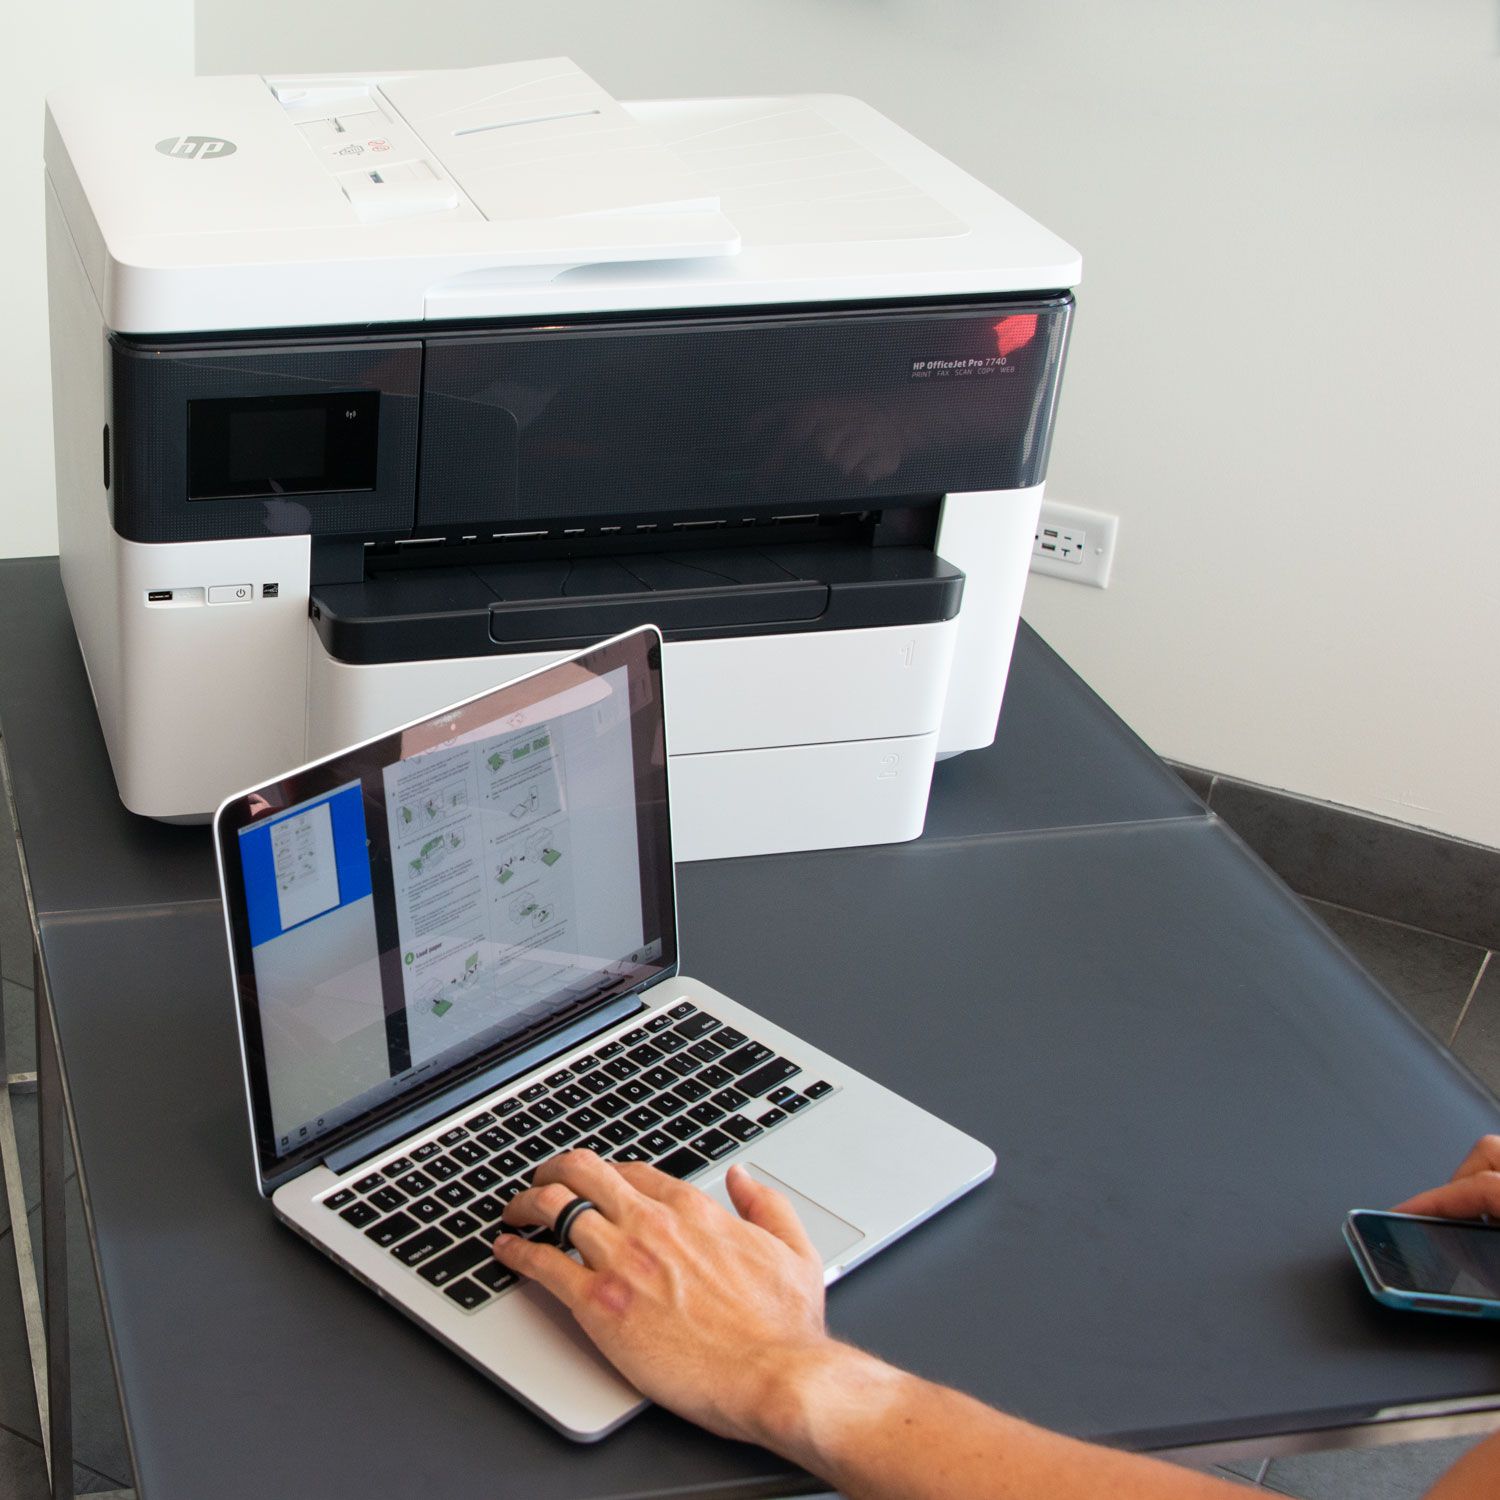 Impresora HP Multifunción OfficeJet Pro 7740 gran formato imprime, copia, escanea en A3, fax Adf automatico a doble cara Wifi color 35 ppm negro y 20 ppm color 